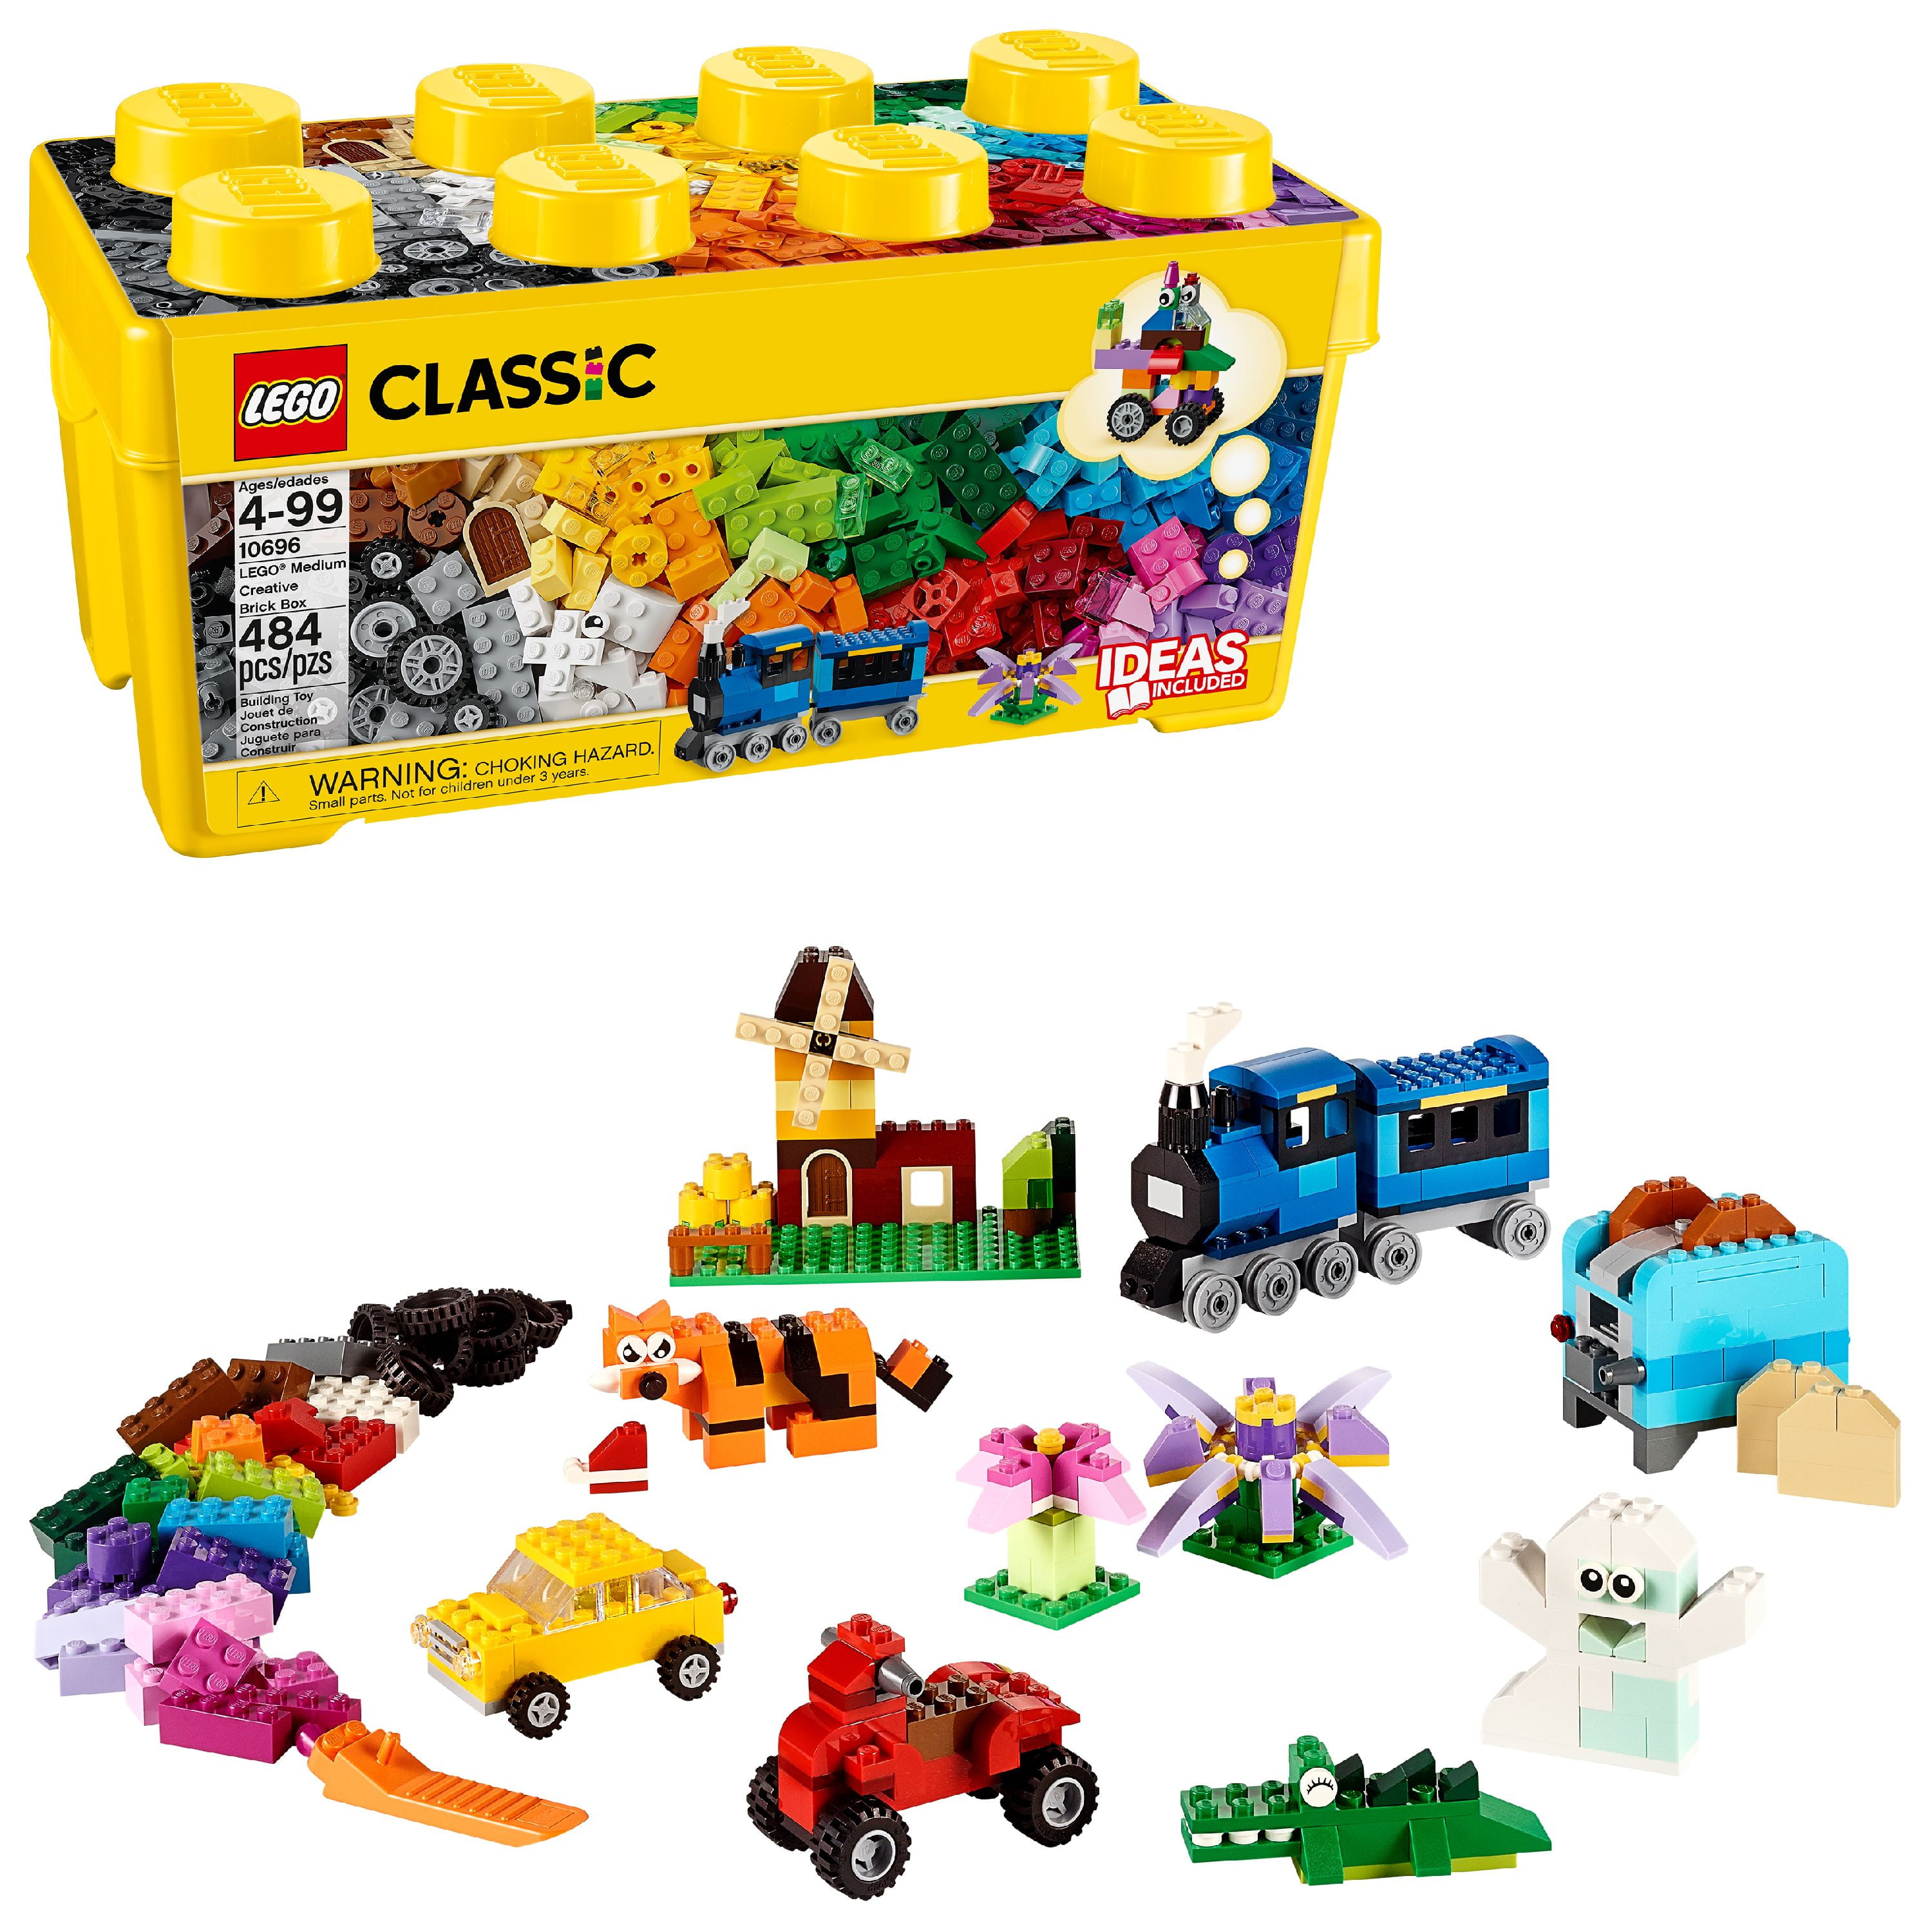 construction toys like lego